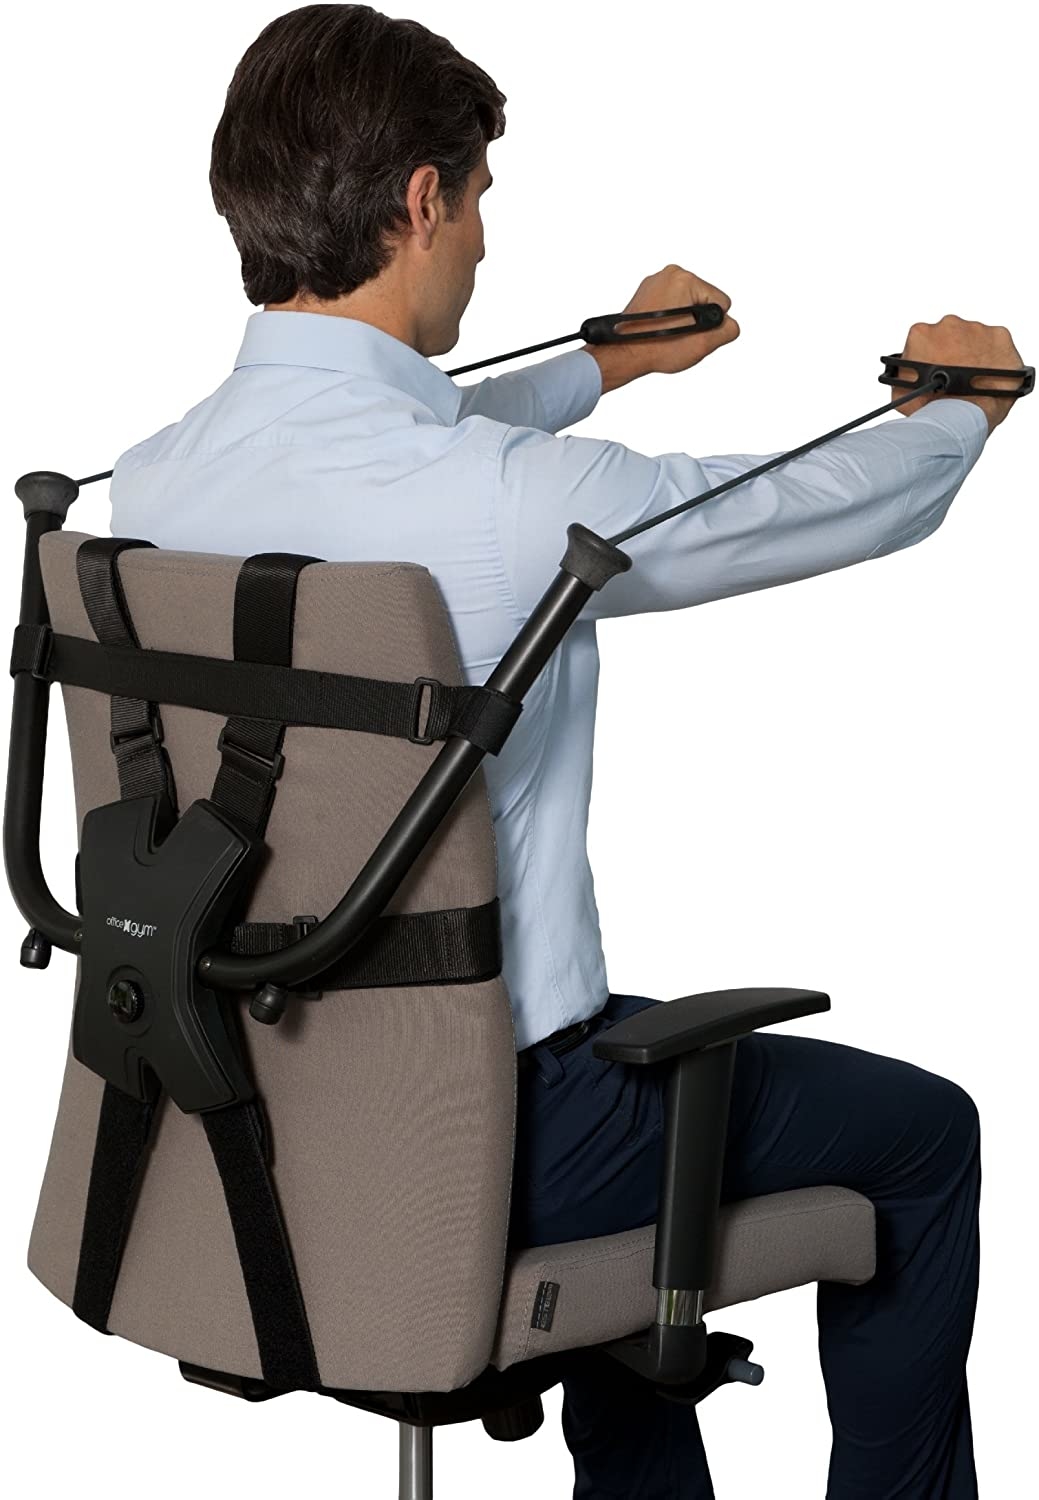 Кресло с поддержками офисное. Тренажеры для офисных работников. Кресло тренажер. Офисный стул с поддержкой поясницы. Сидячий тренажер для спины.